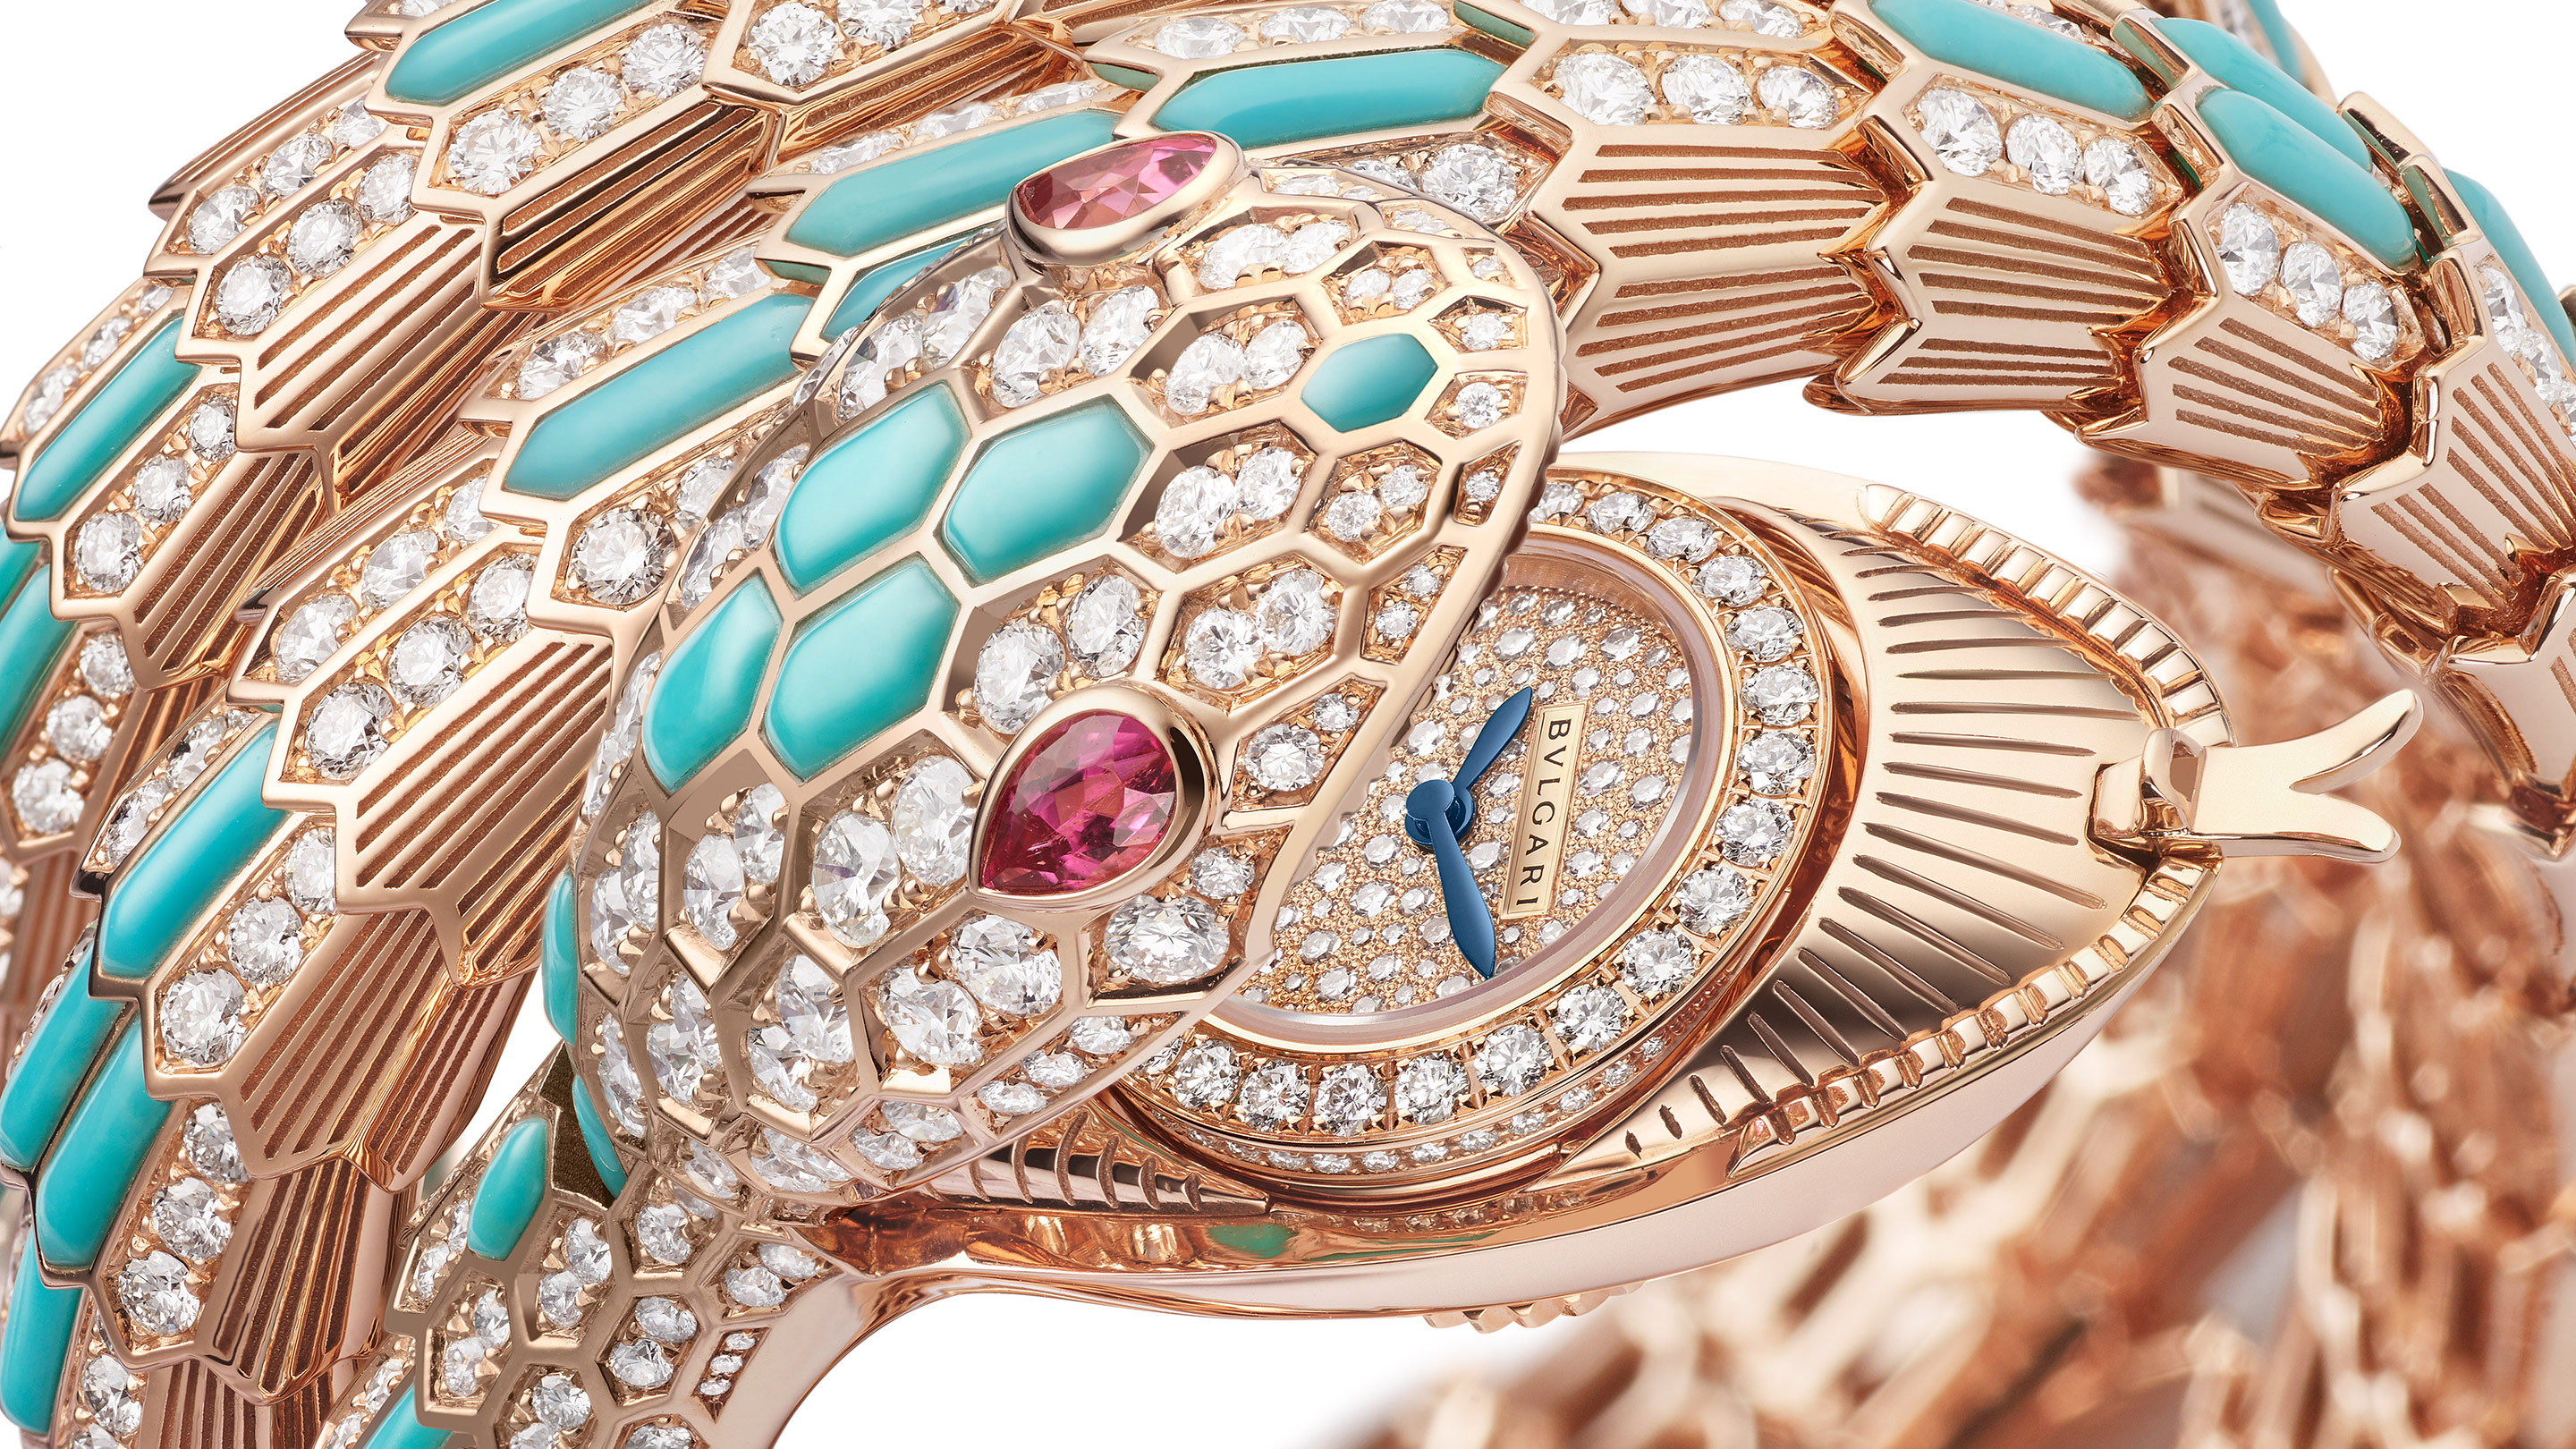 Bulgari's made-to-order Serpenti watch | The Jewellery Editor